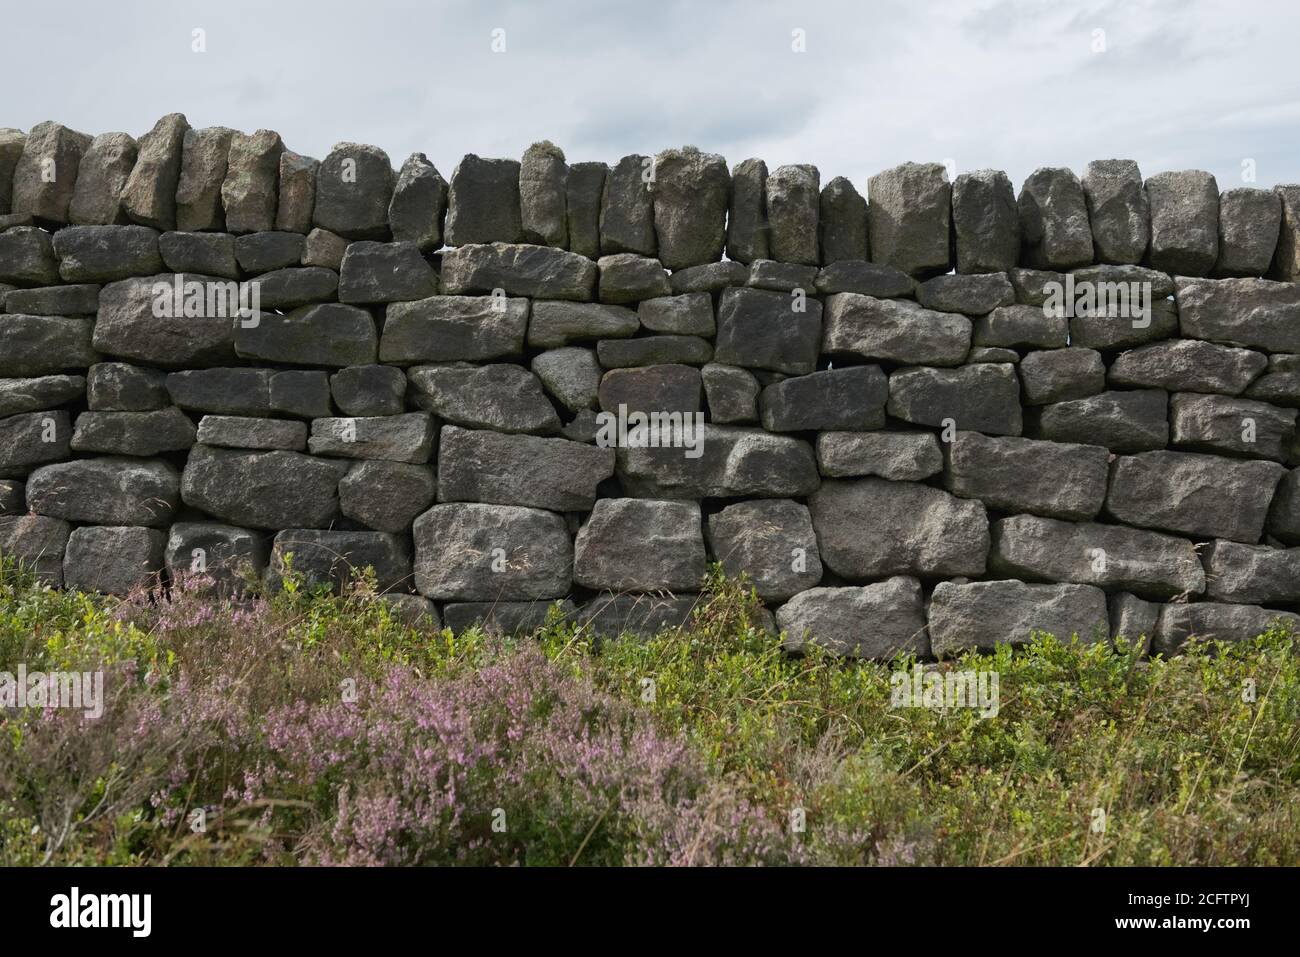 5 - de nombreuses tailles différentes de pierres ou de briques composent ce mur de pierre sec. Texture d'arrière-plan simple avec zone de pointe chinée et plantes en premier plan Banque D'Images